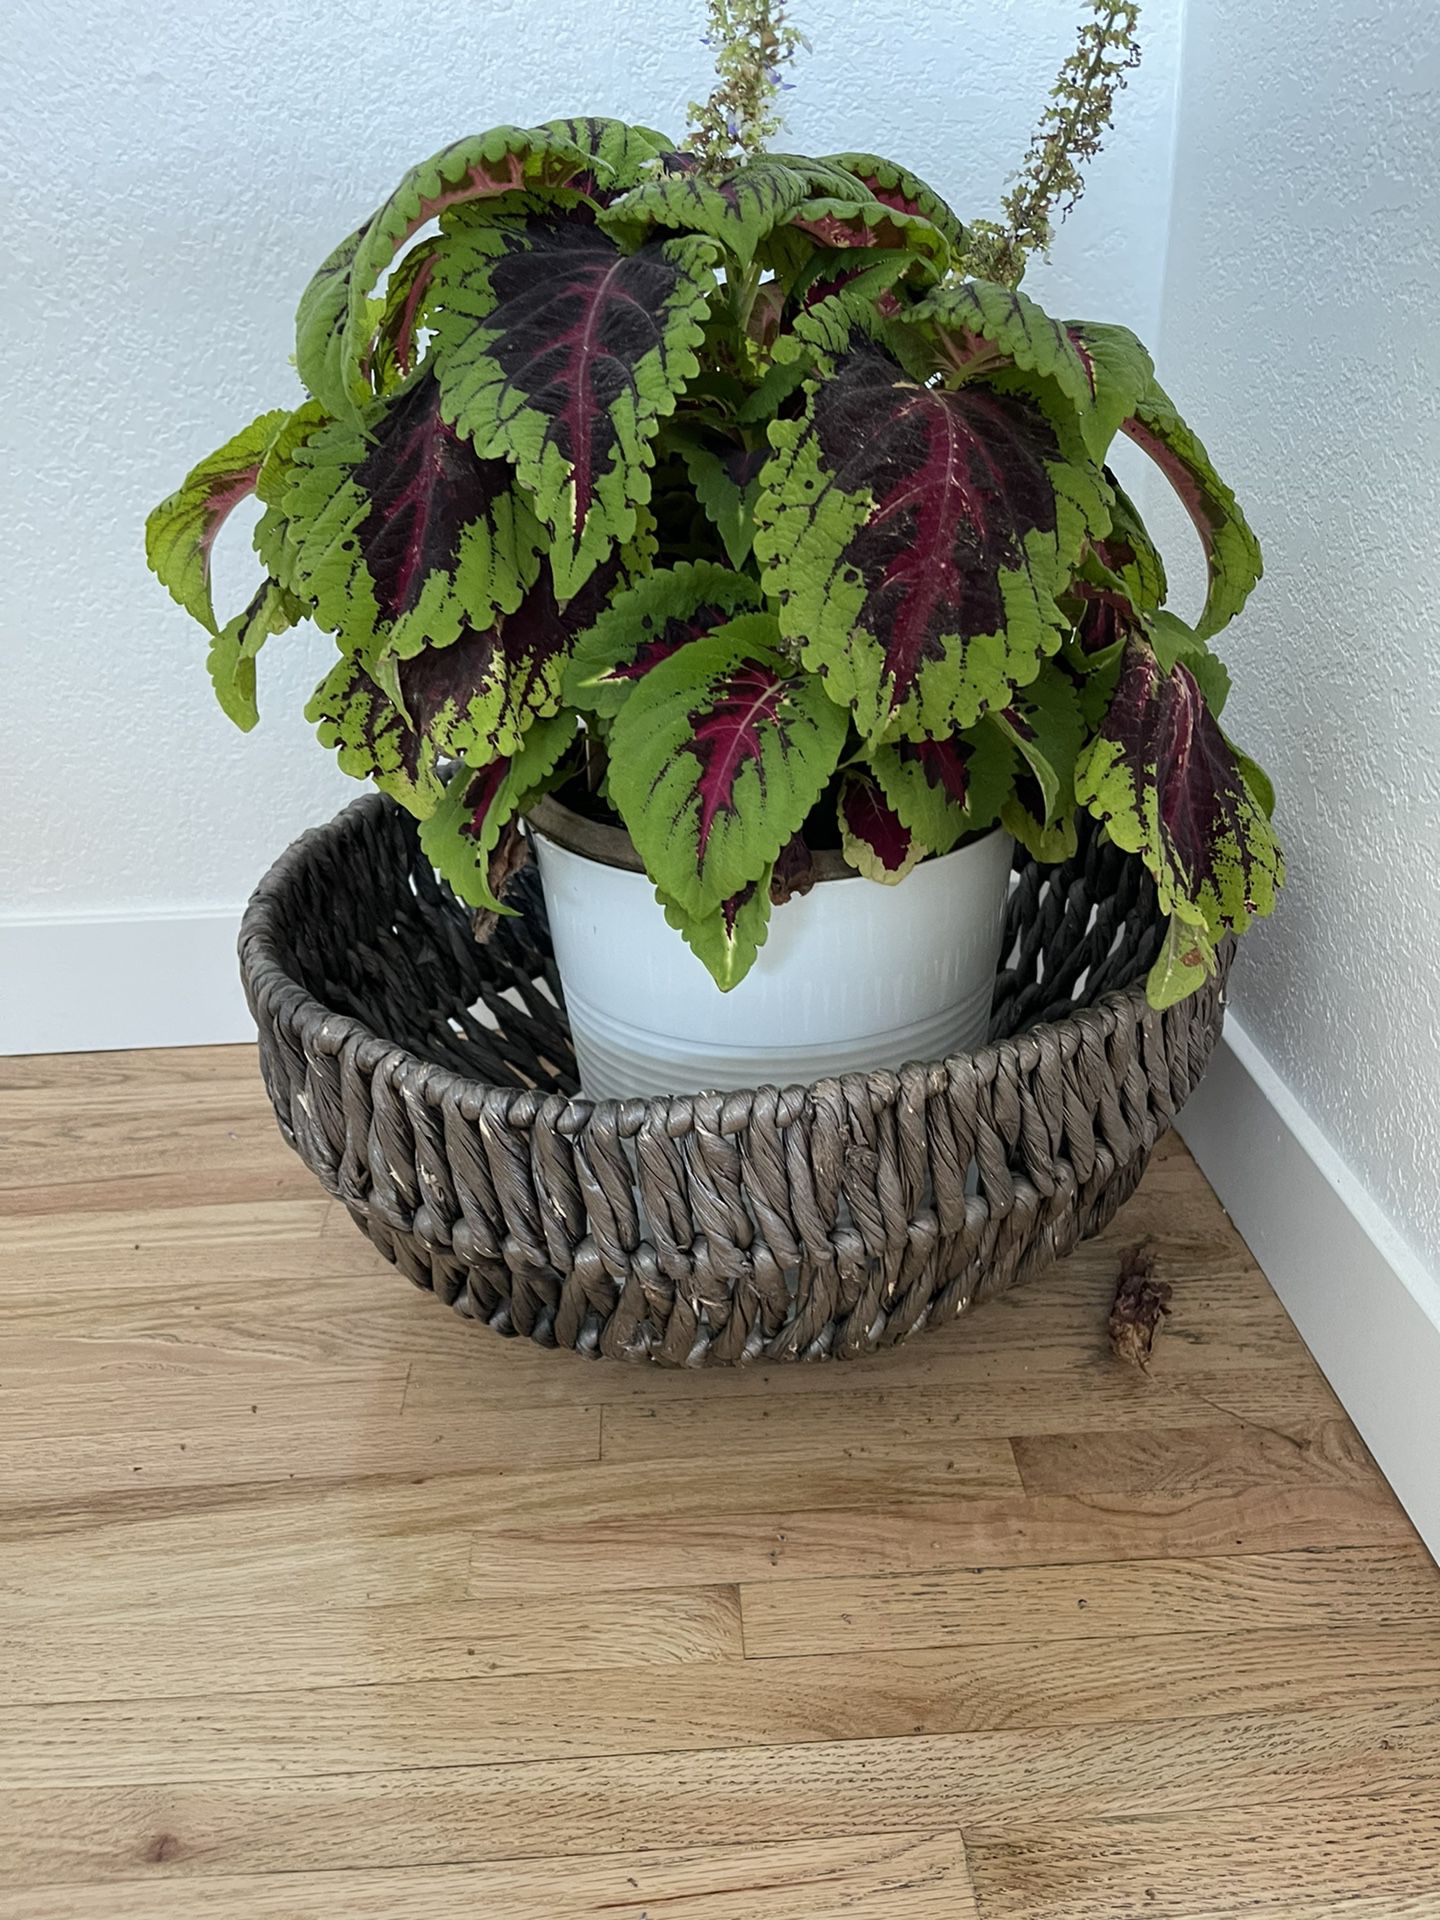 Seaweed/ wicker basket storage, blanket basket 🧺 or planter 